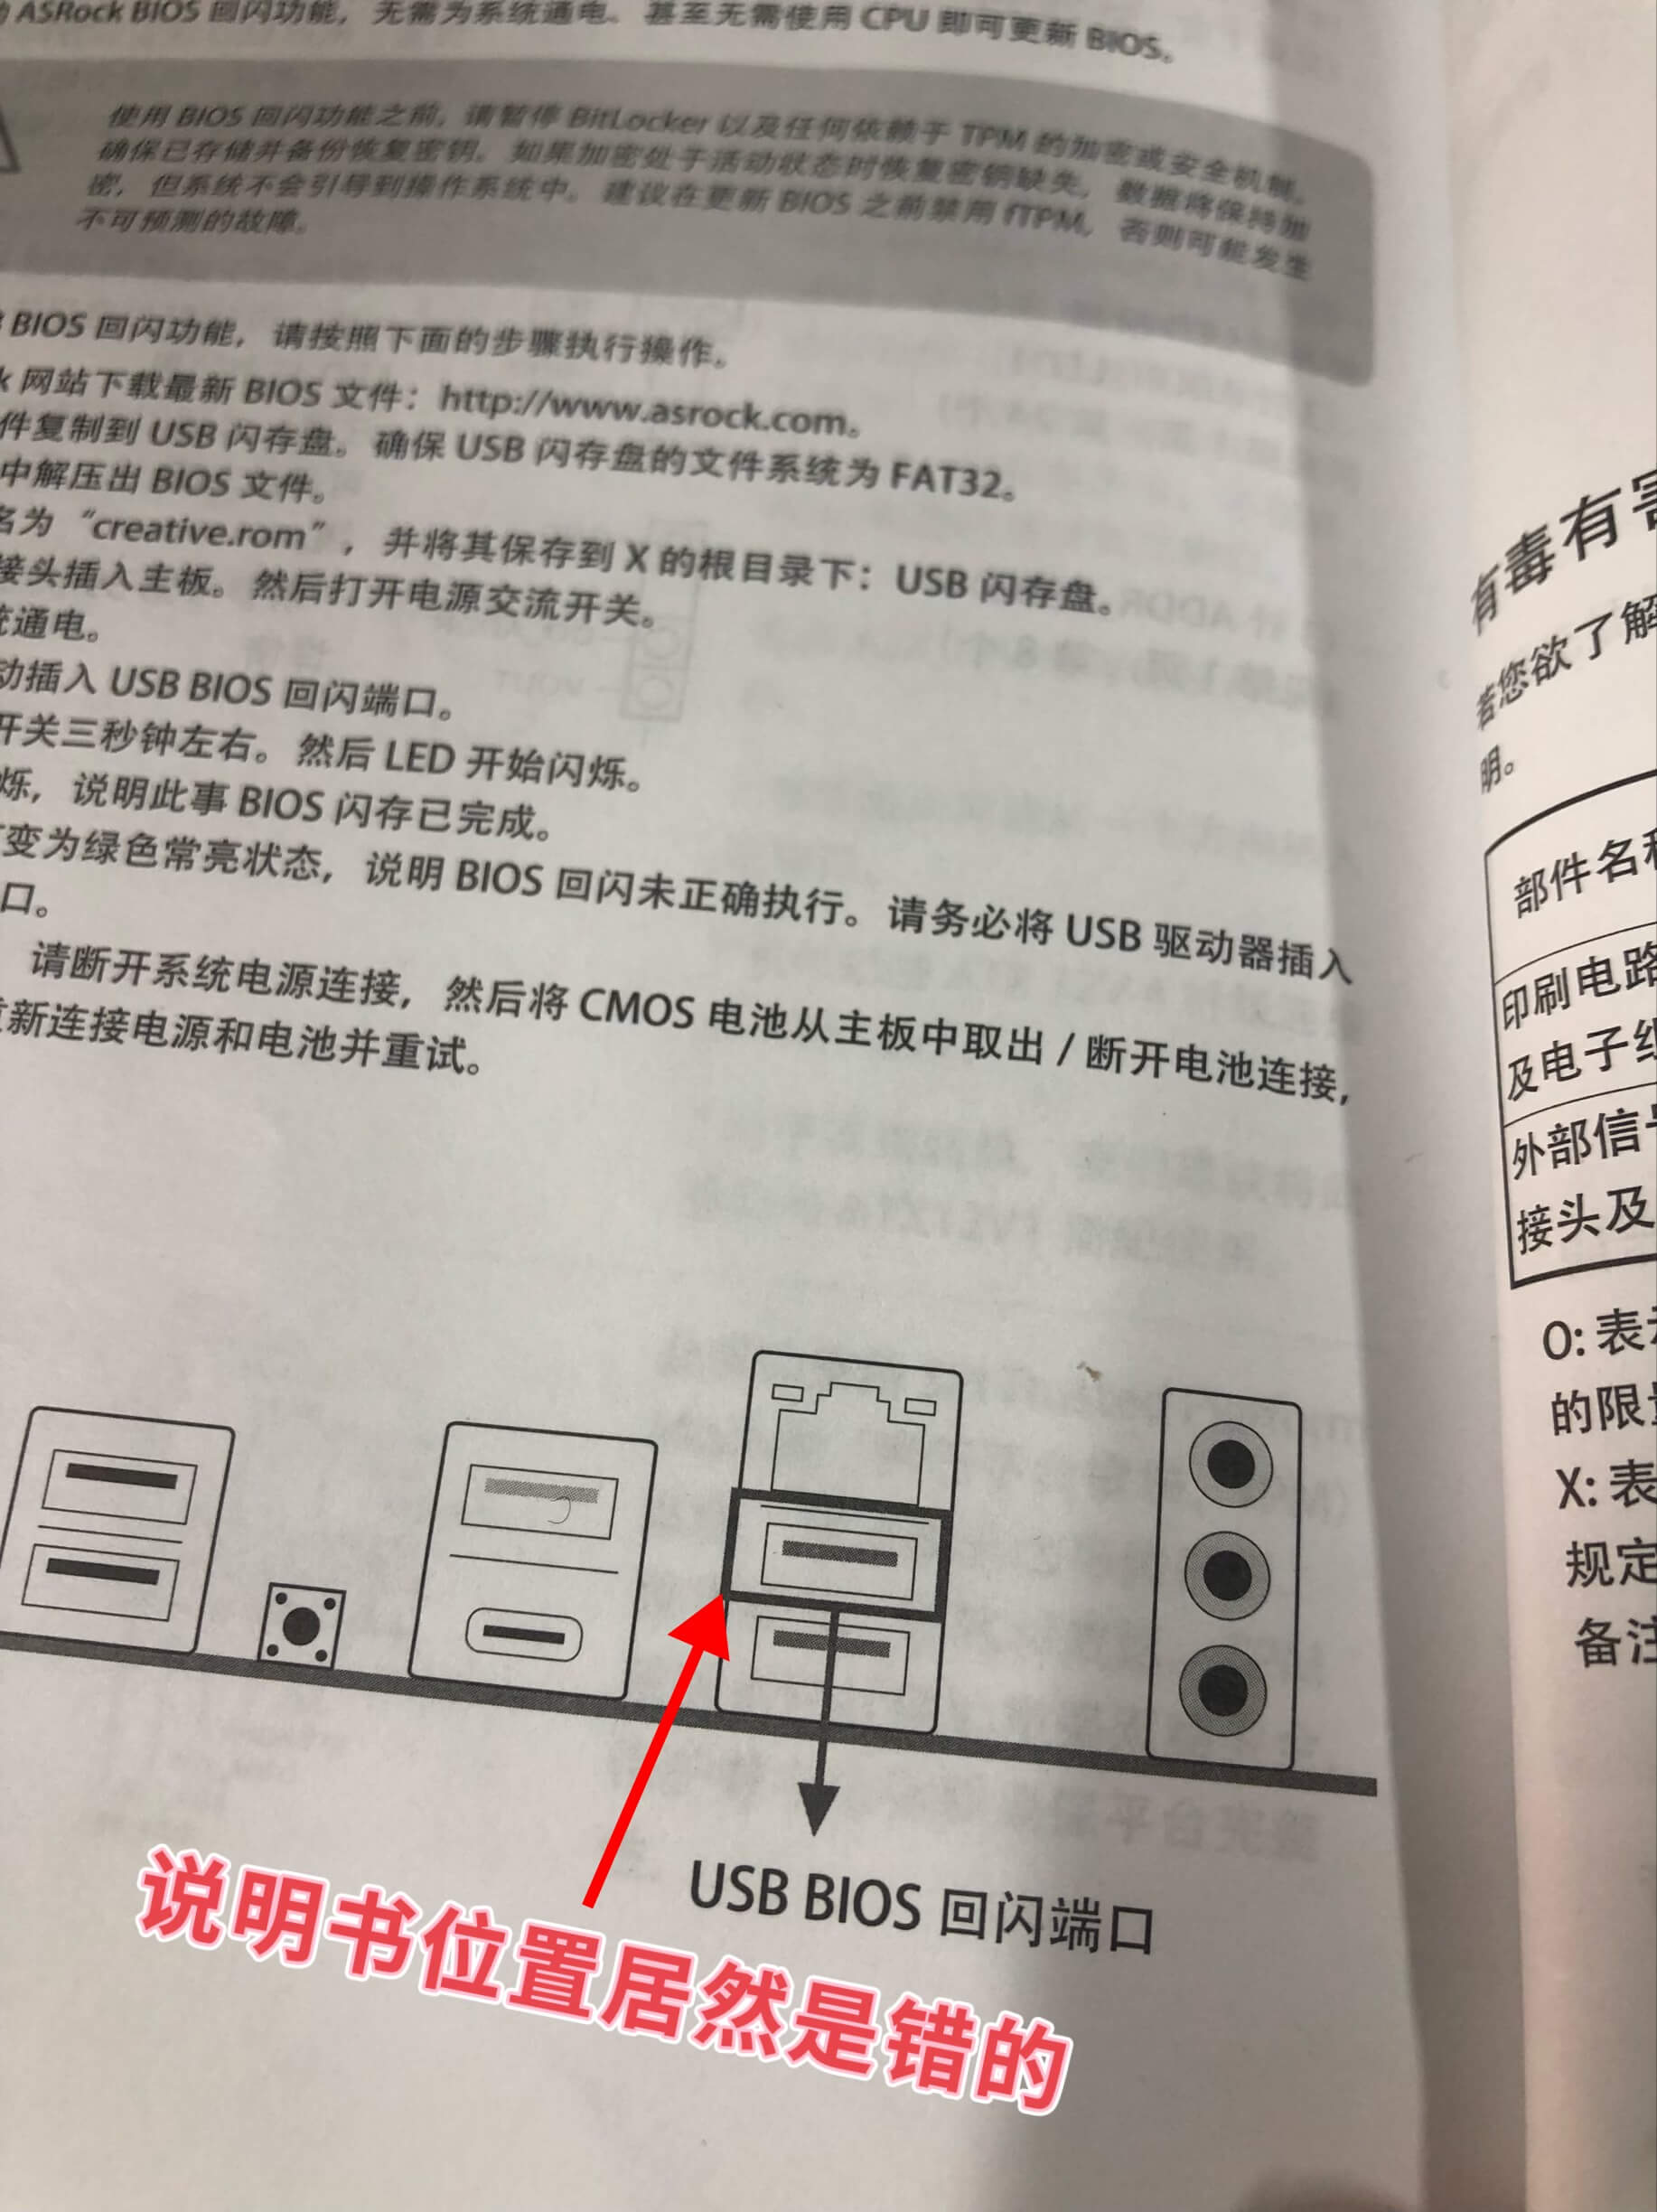 说明书的USB接口标错